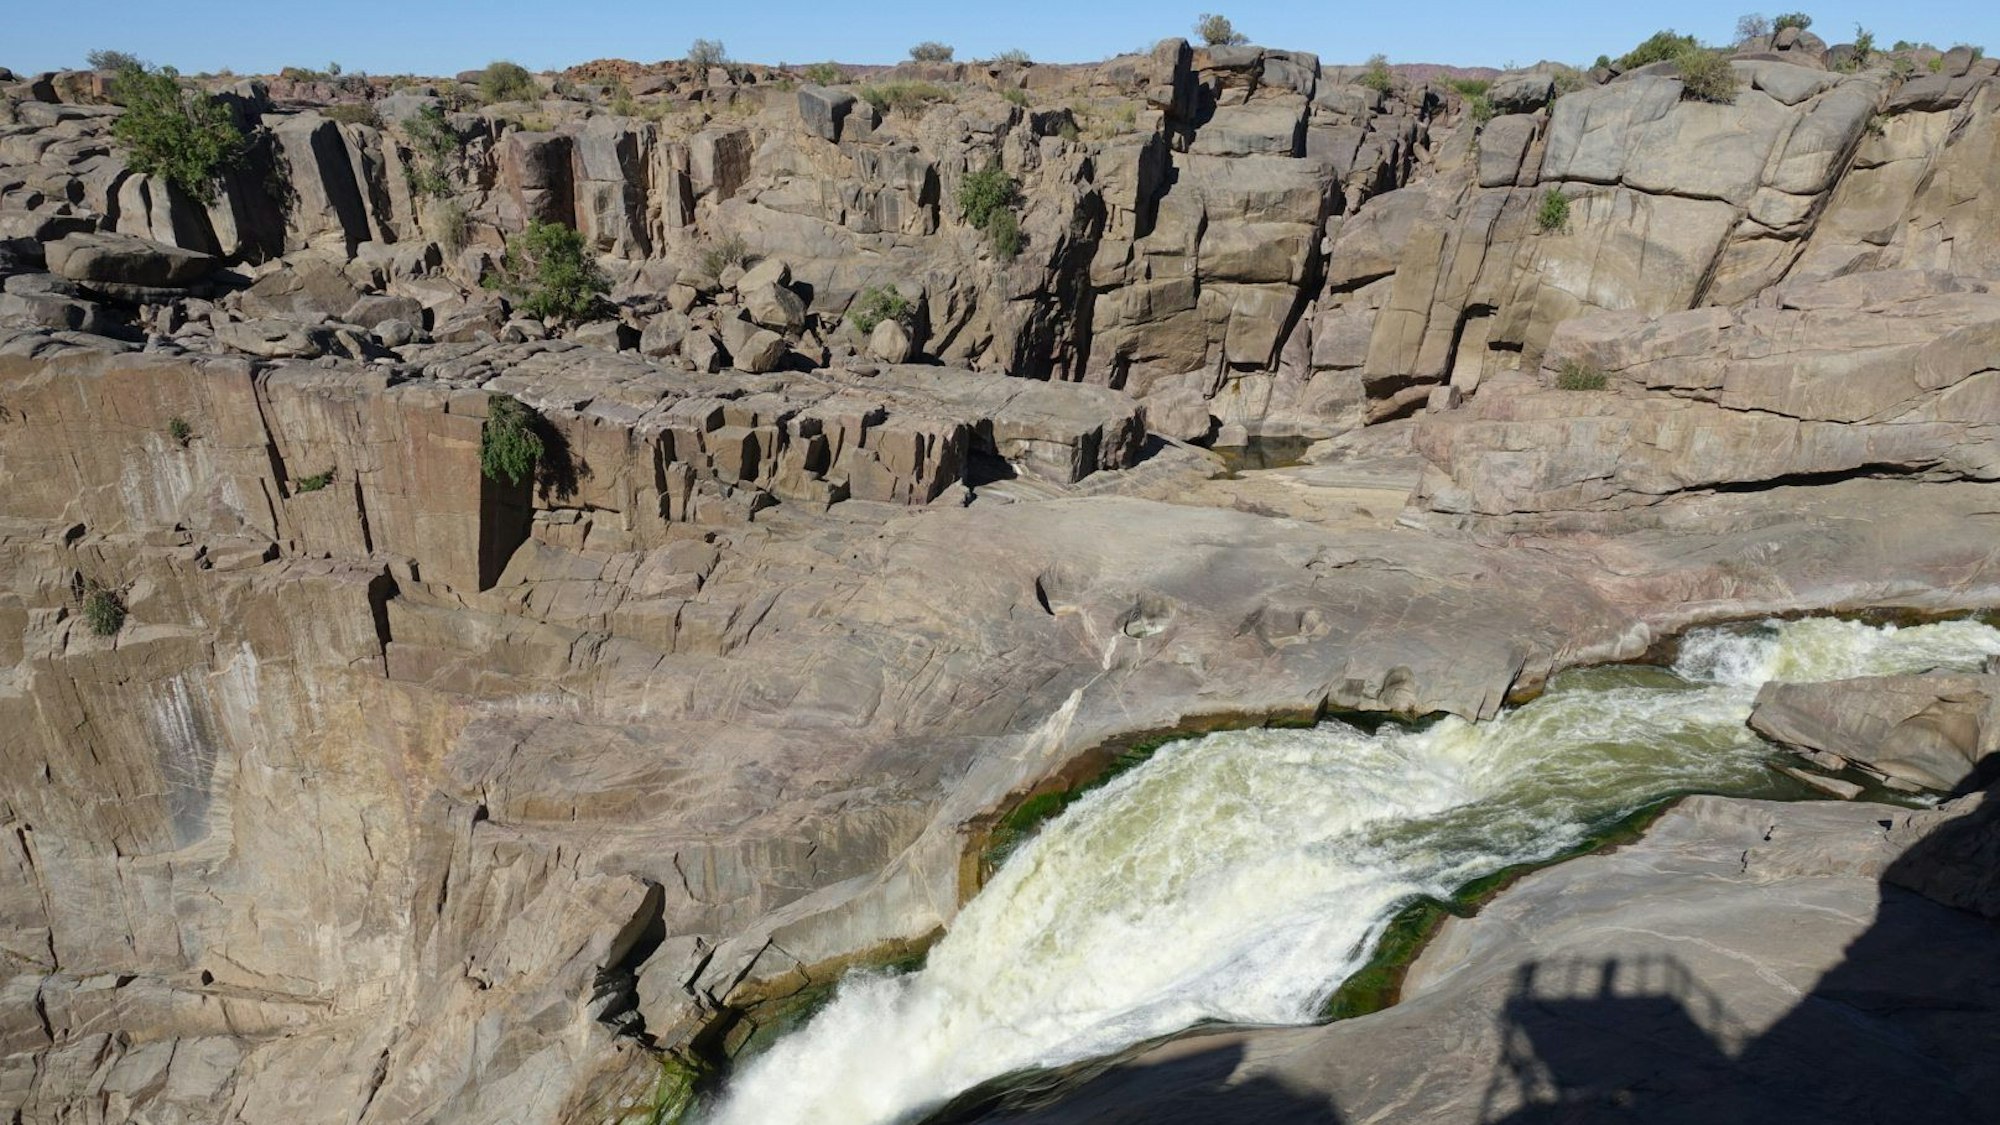 ARCHIV - Augrabies Falls: Im gleichnamigen Nationalpark stürzt der Wasserfall in eine Schlucht - ein Naturschauspiel.